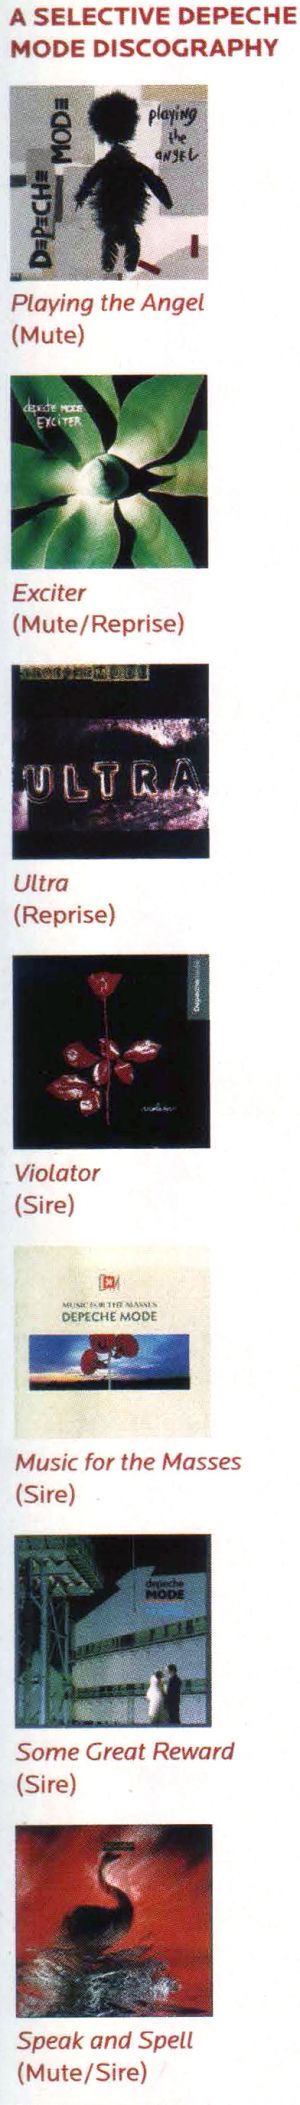 Keyboard Nov 2005 - Depeche Mode - Photo 2.jpg